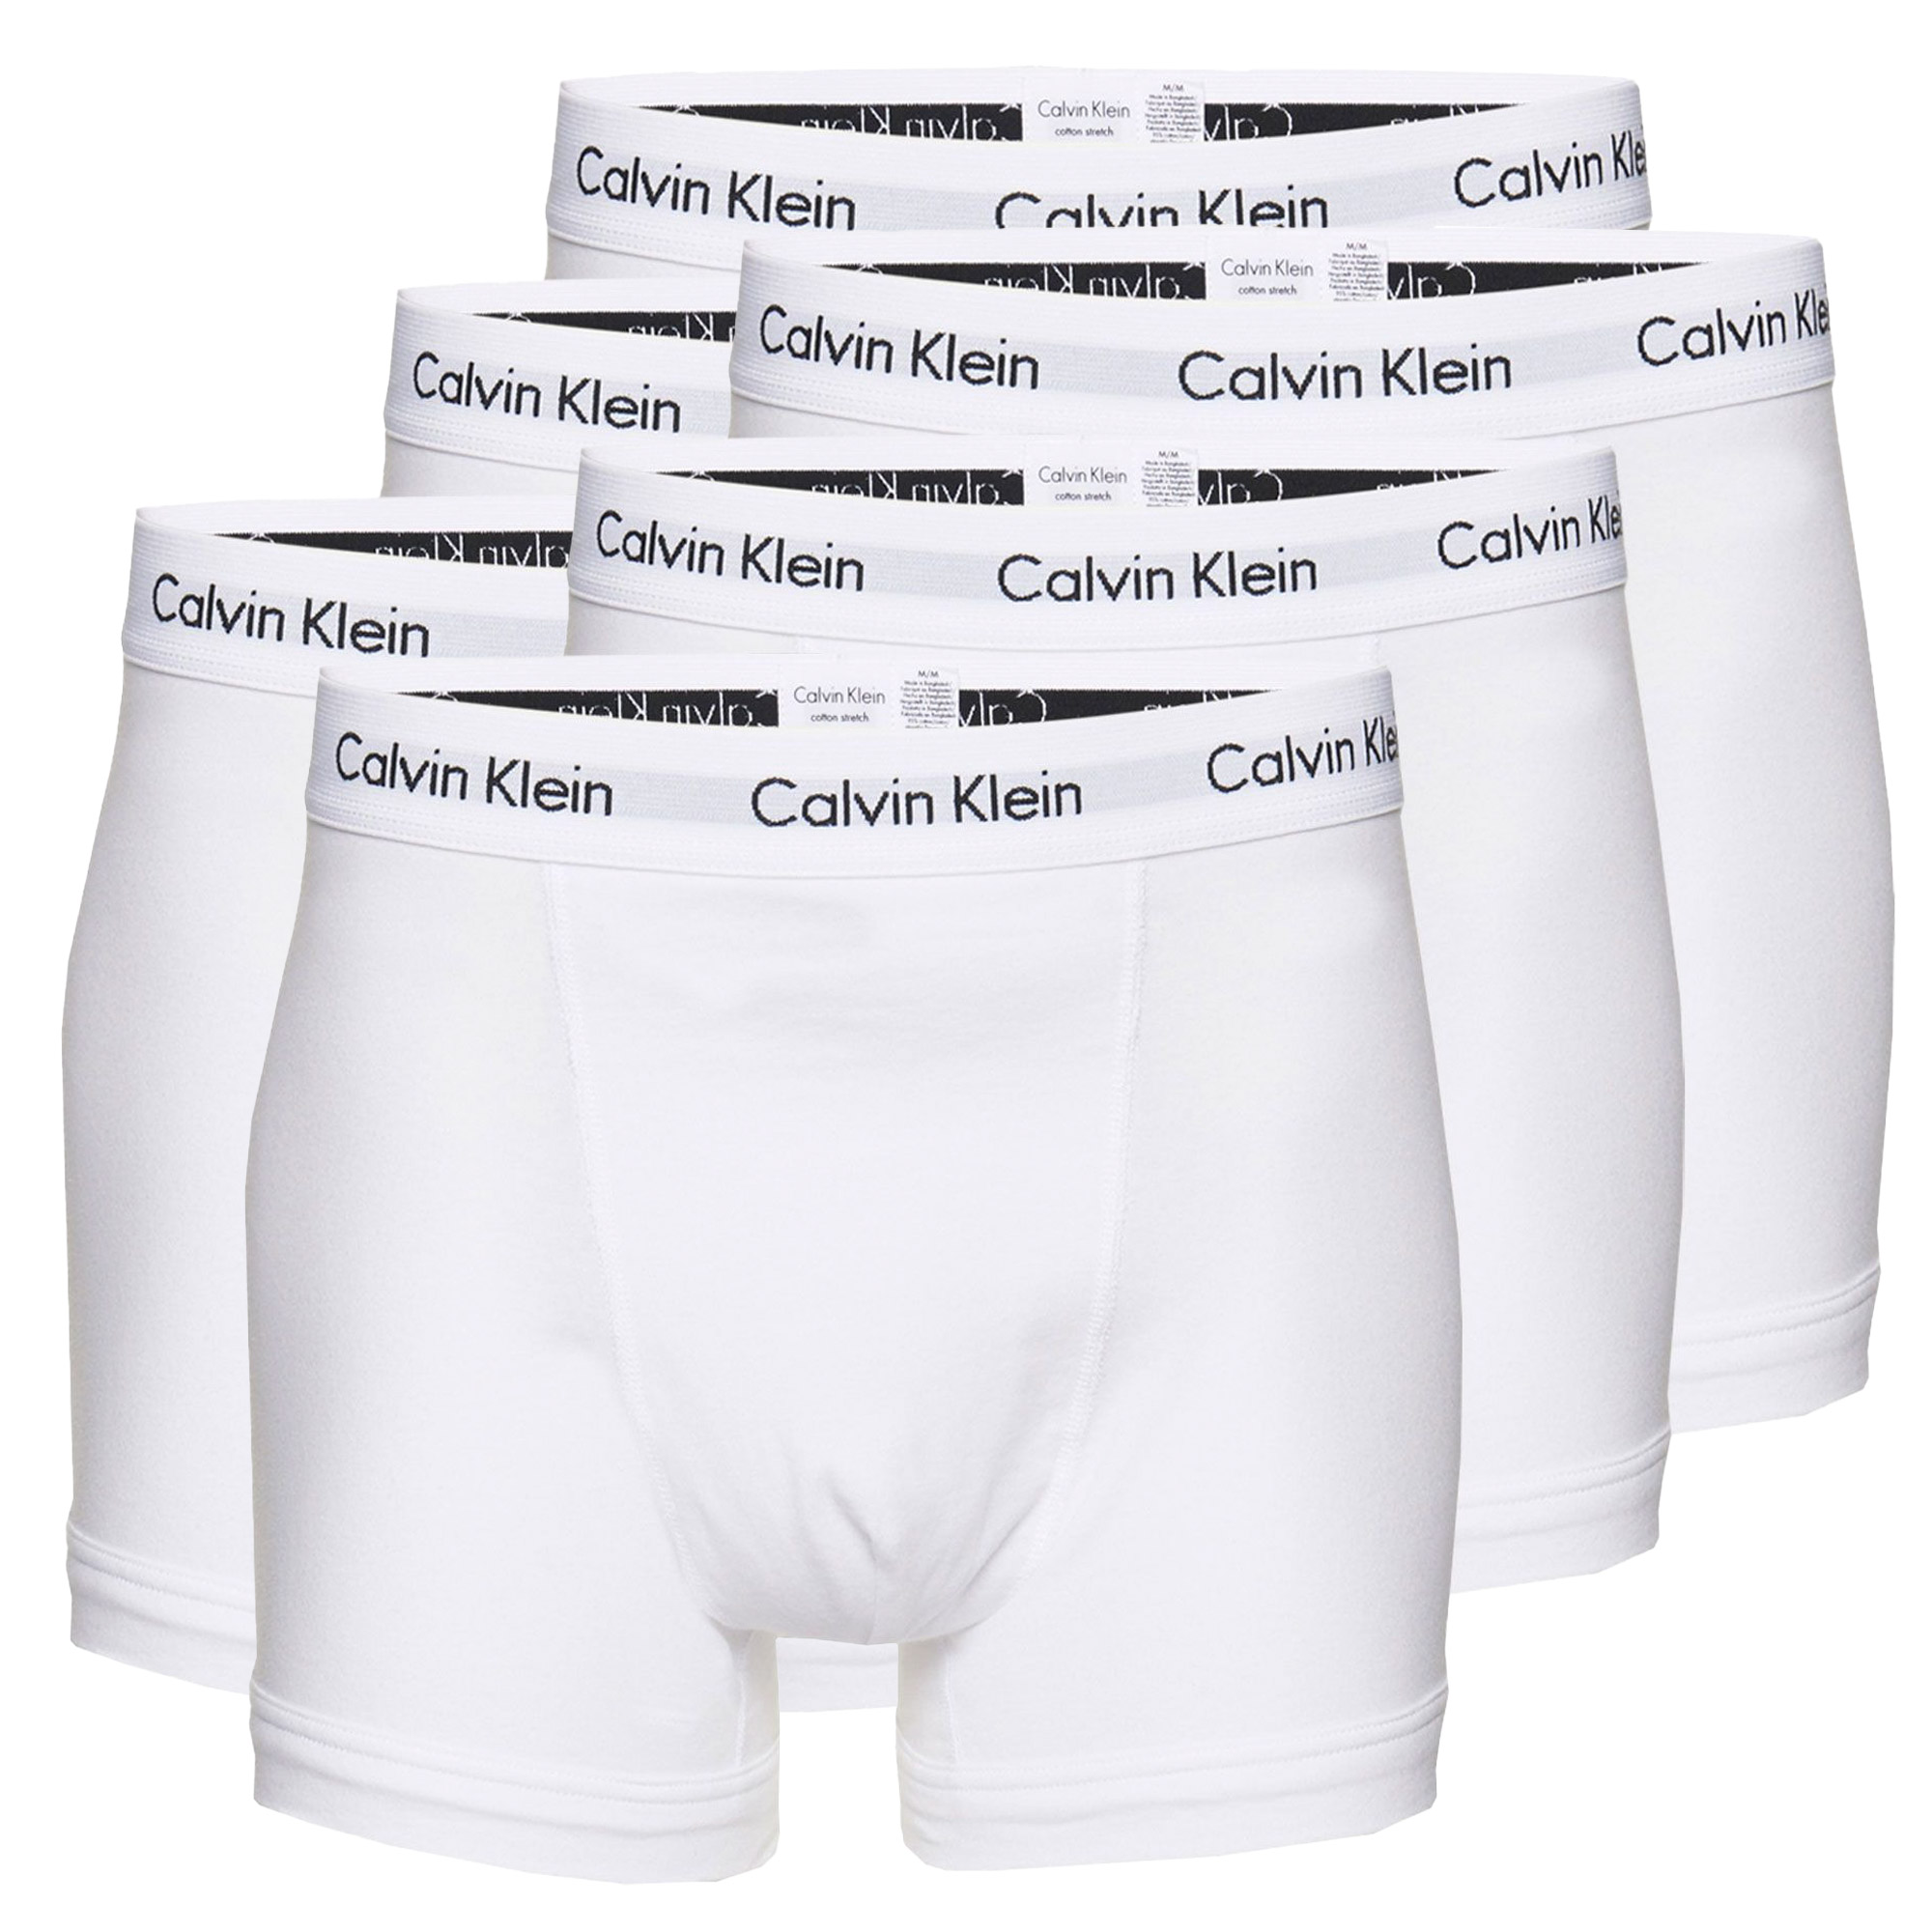 Boxer-shorts Calvin Klein Trunk Hommes (Lot de 6)